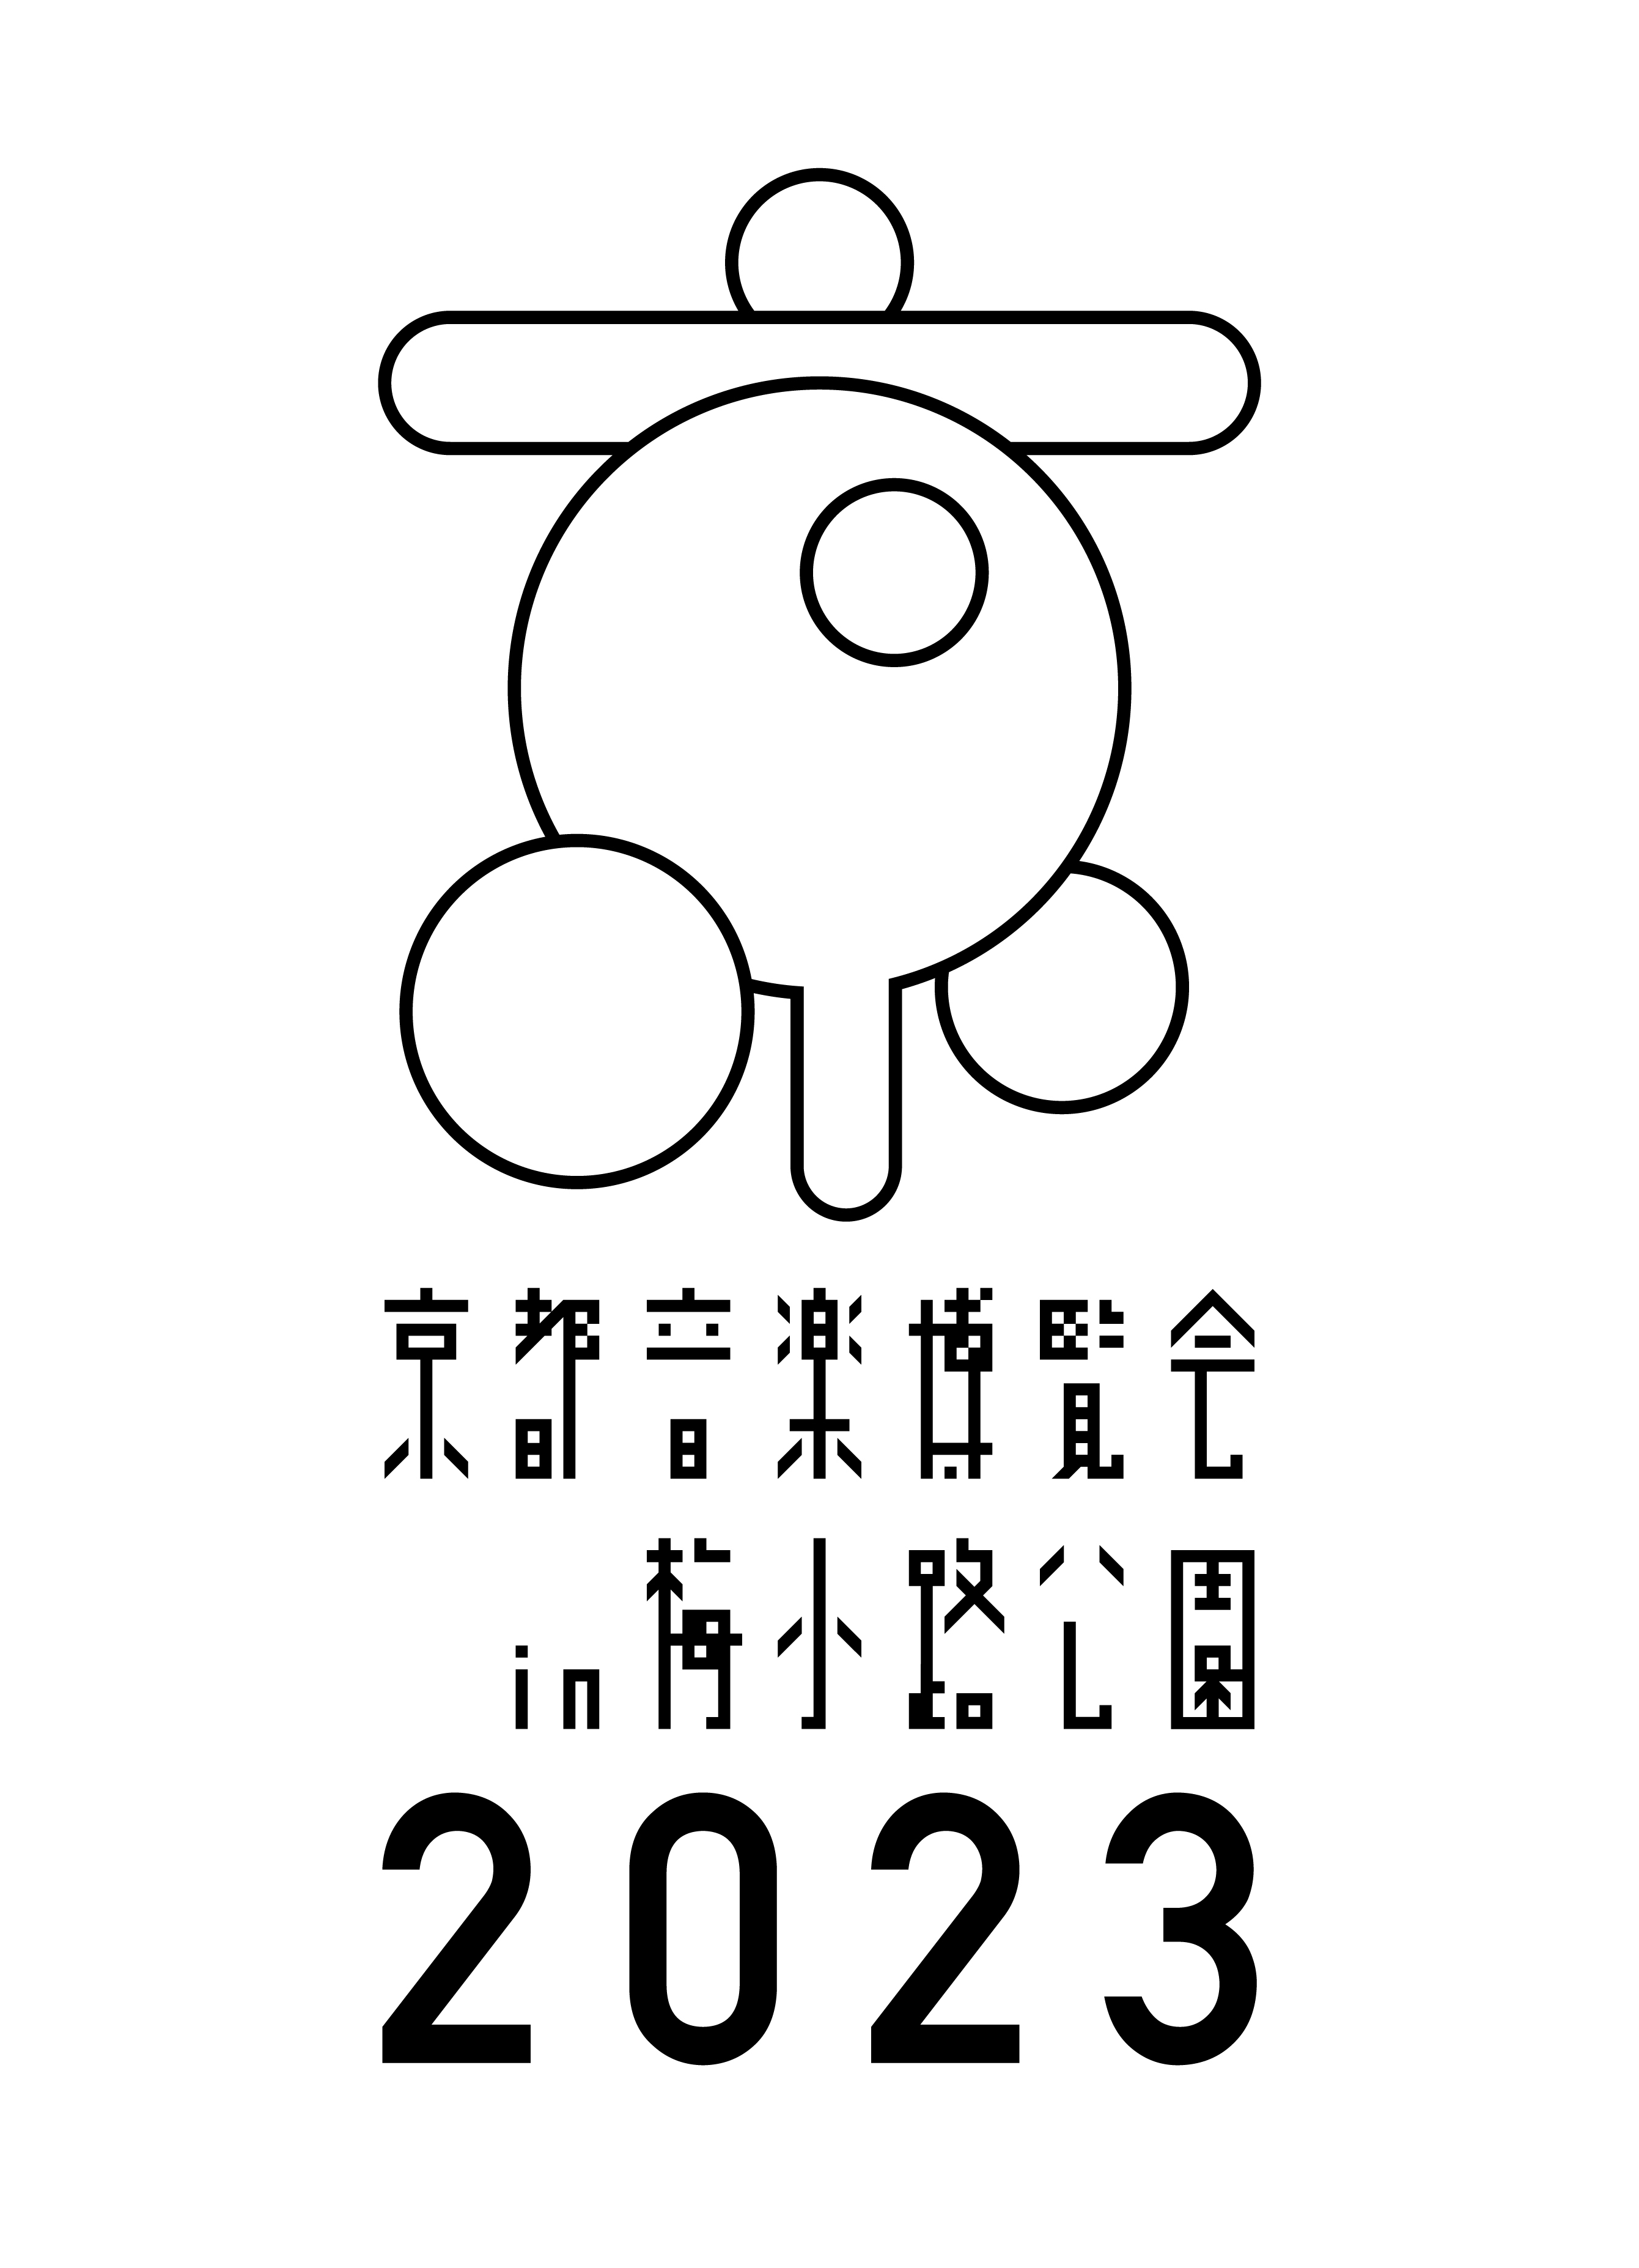 『京都音楽博覧会2023』